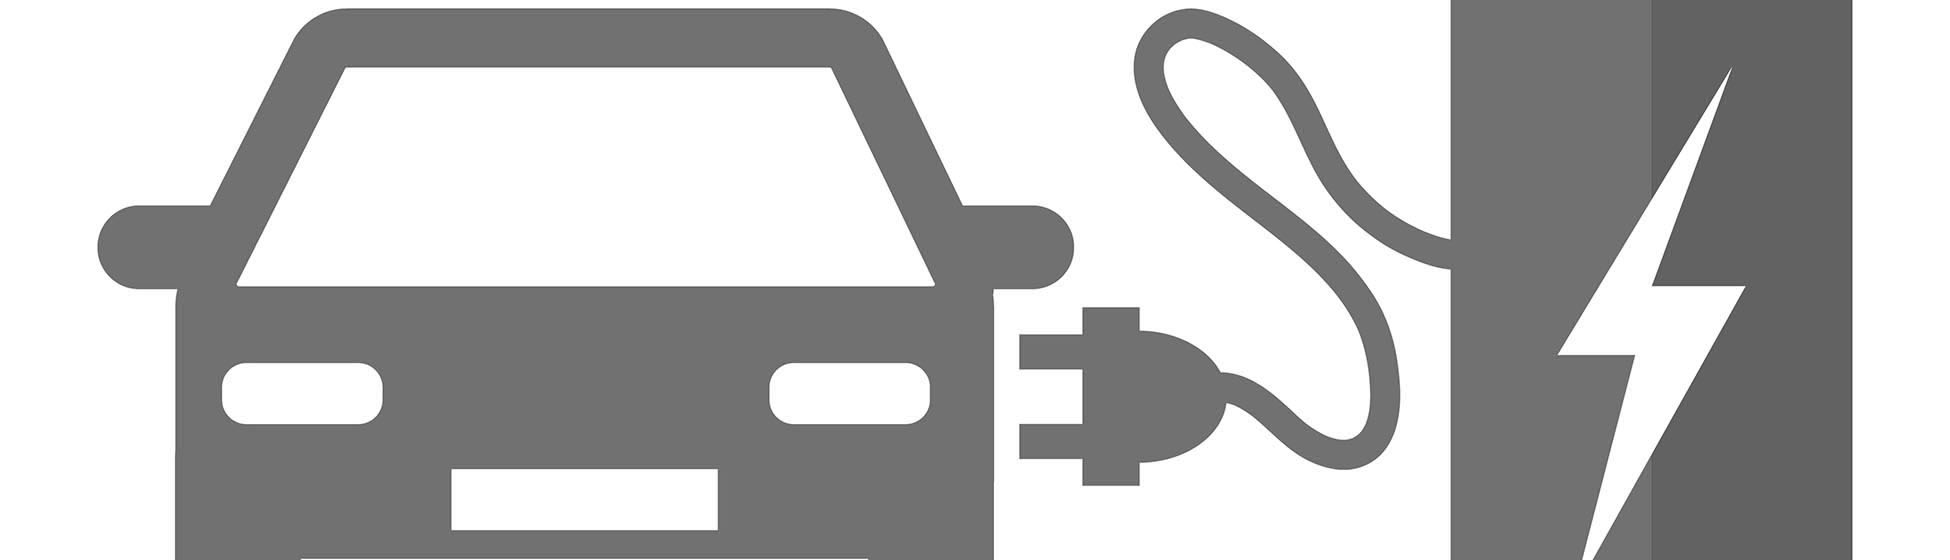 Fonctionnement borne de recharge voiture électrique